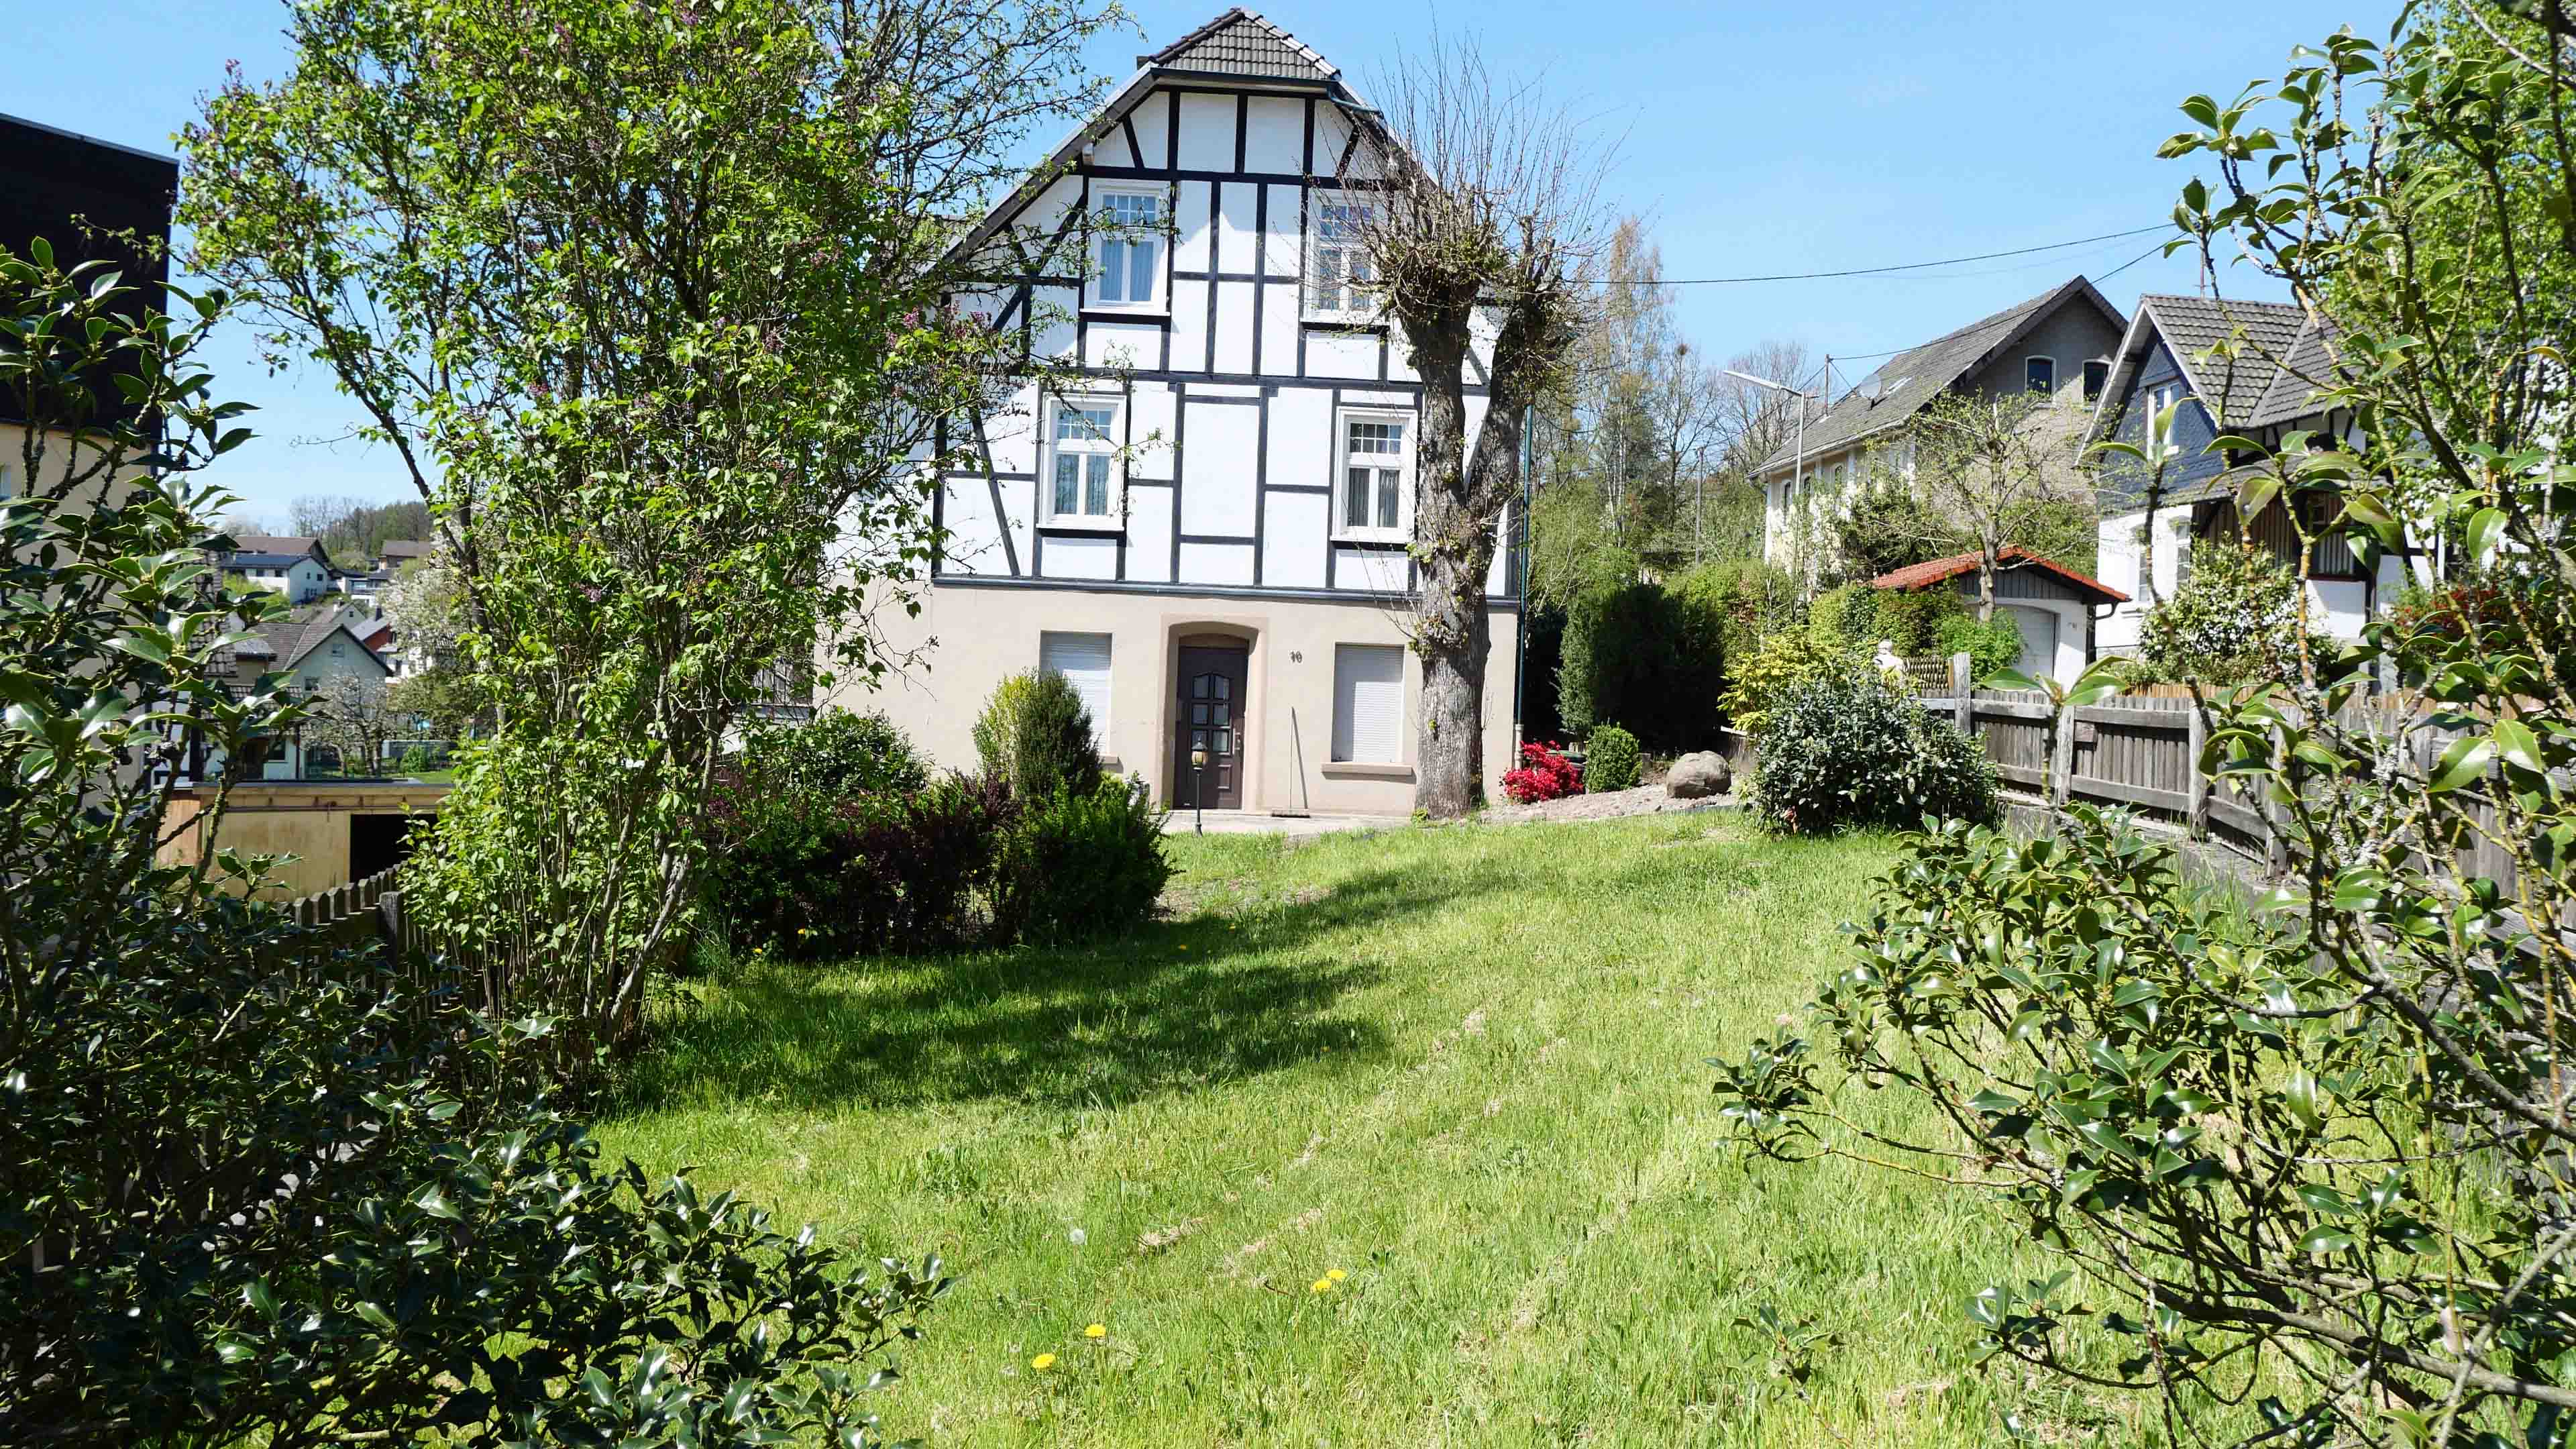 Morsbach: Alles fußläufig erreichbar. Großes, charmantes 1-2-Familienhaus, 525 m² Grundstück mit traditioneller Hauslinde